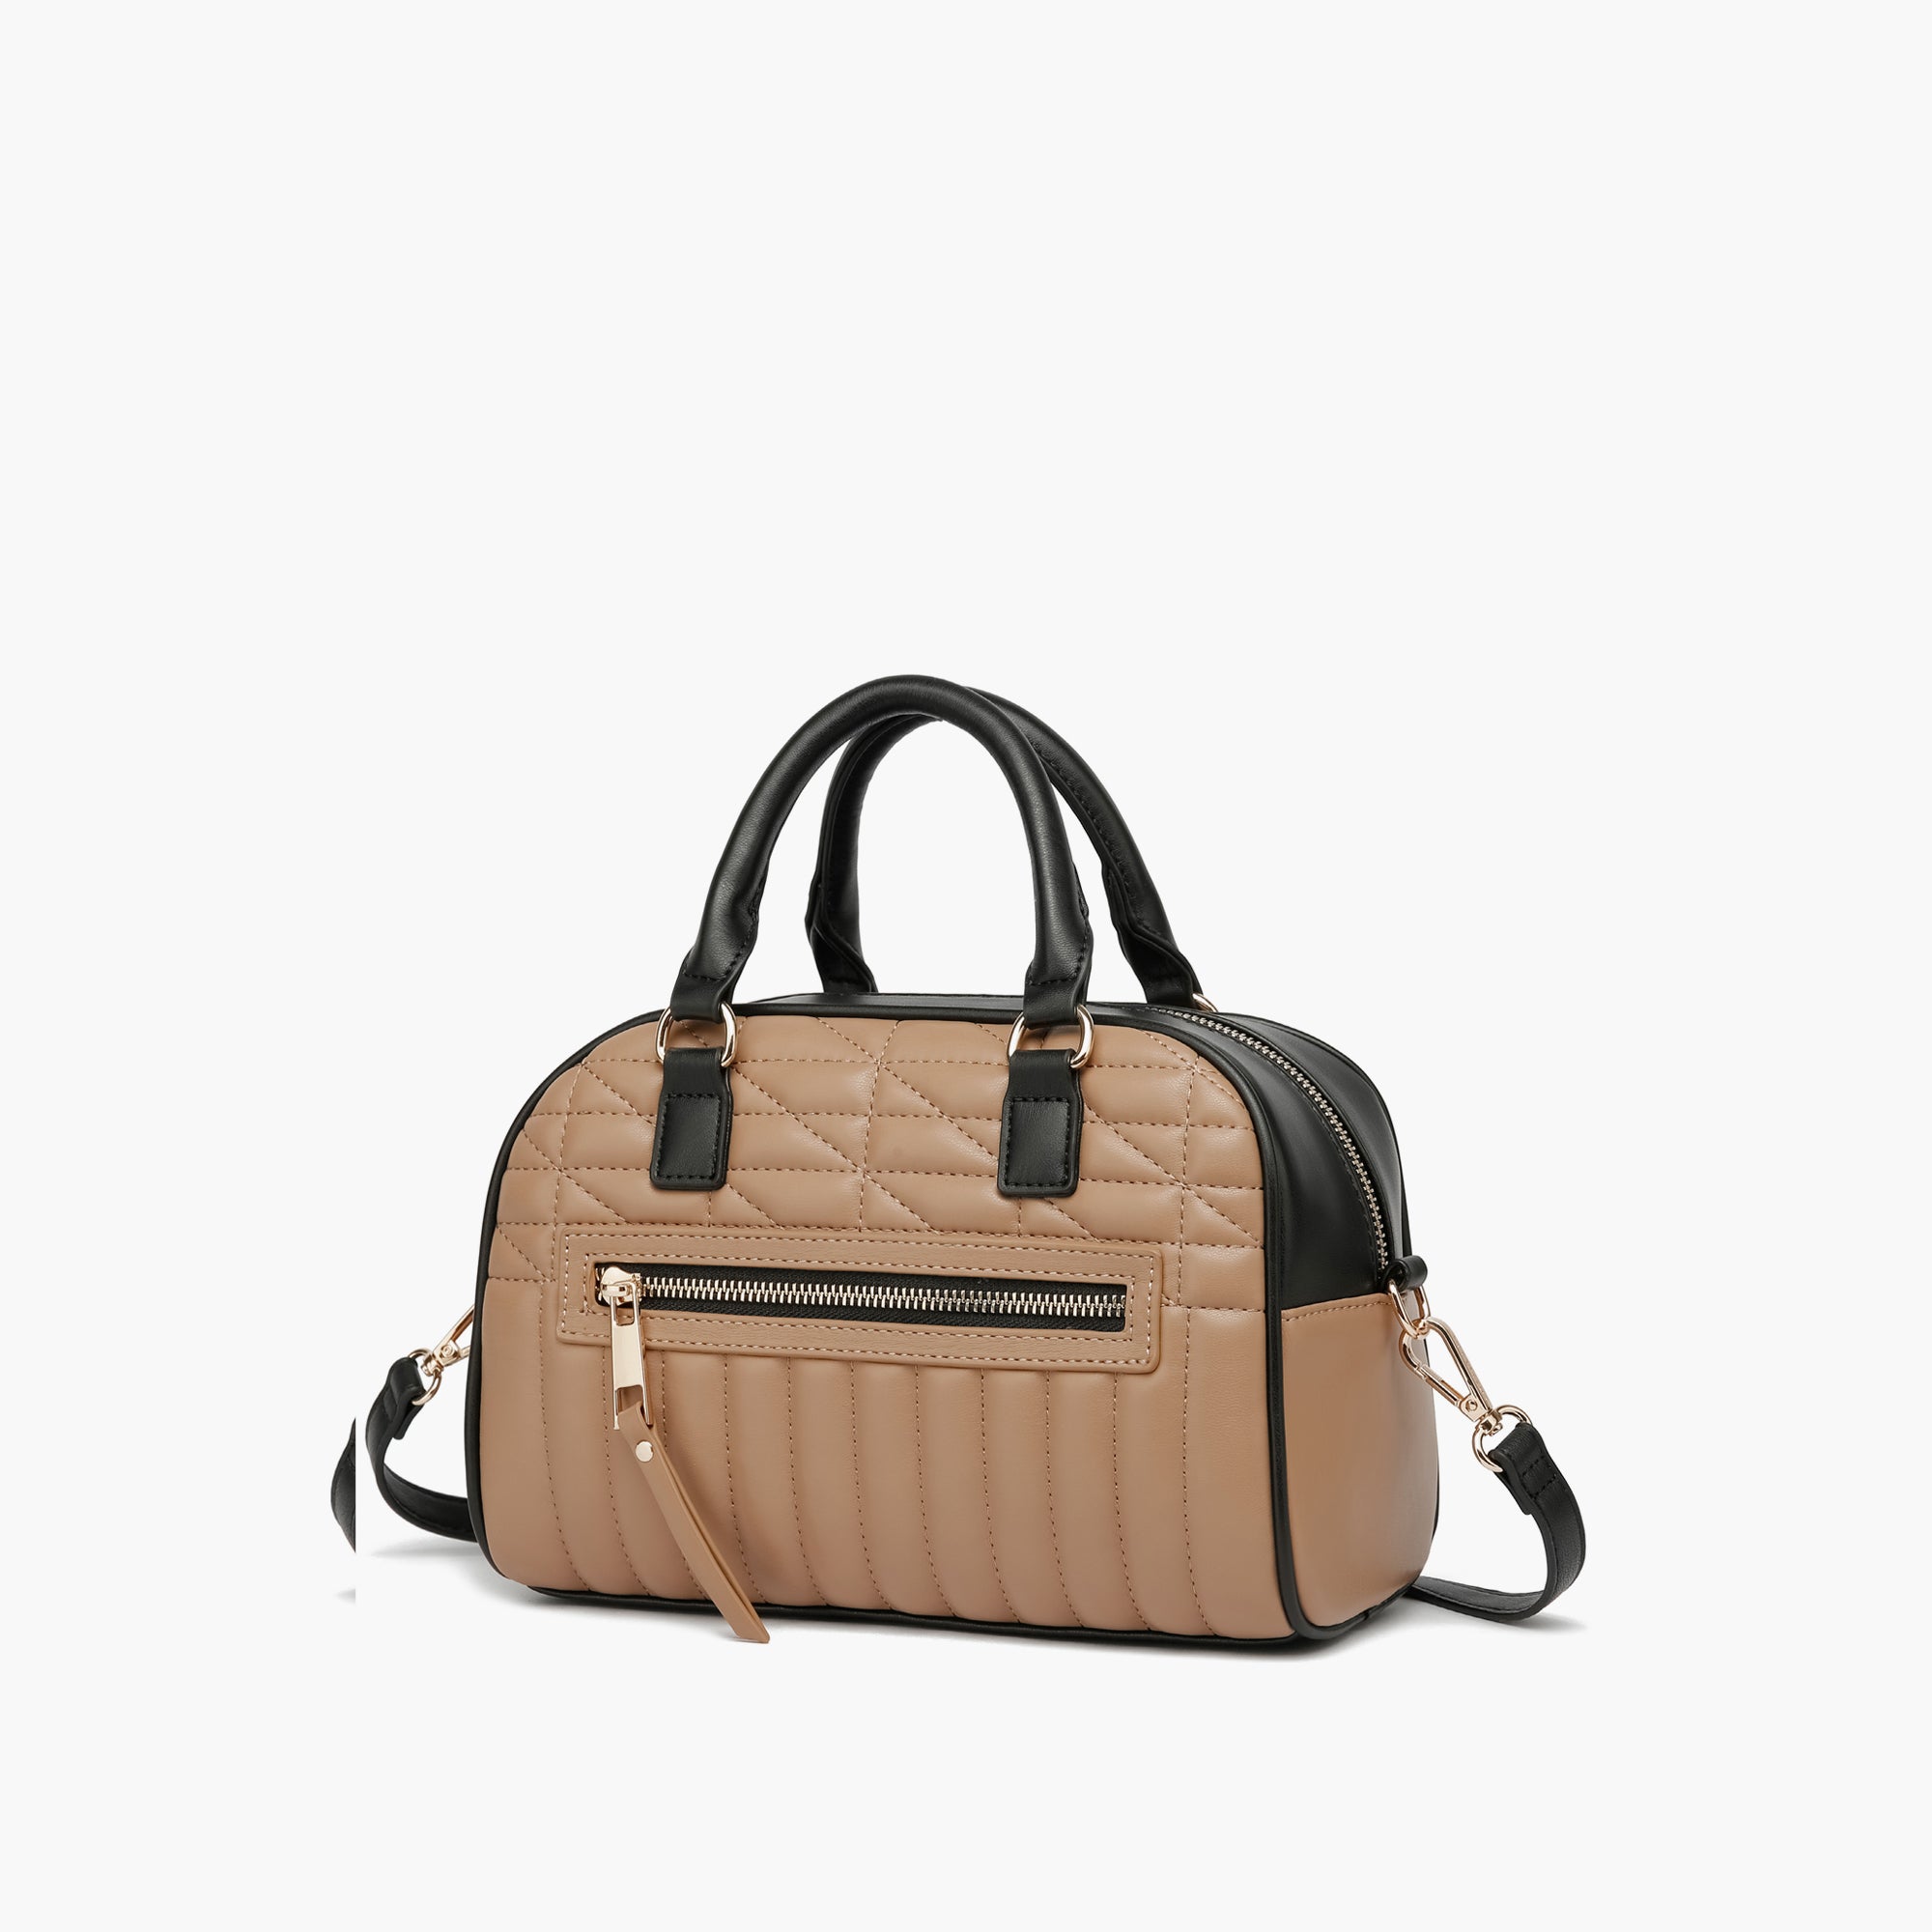 Dark Taupe Leather Kiss Lock Closure Handbag With Adjustable